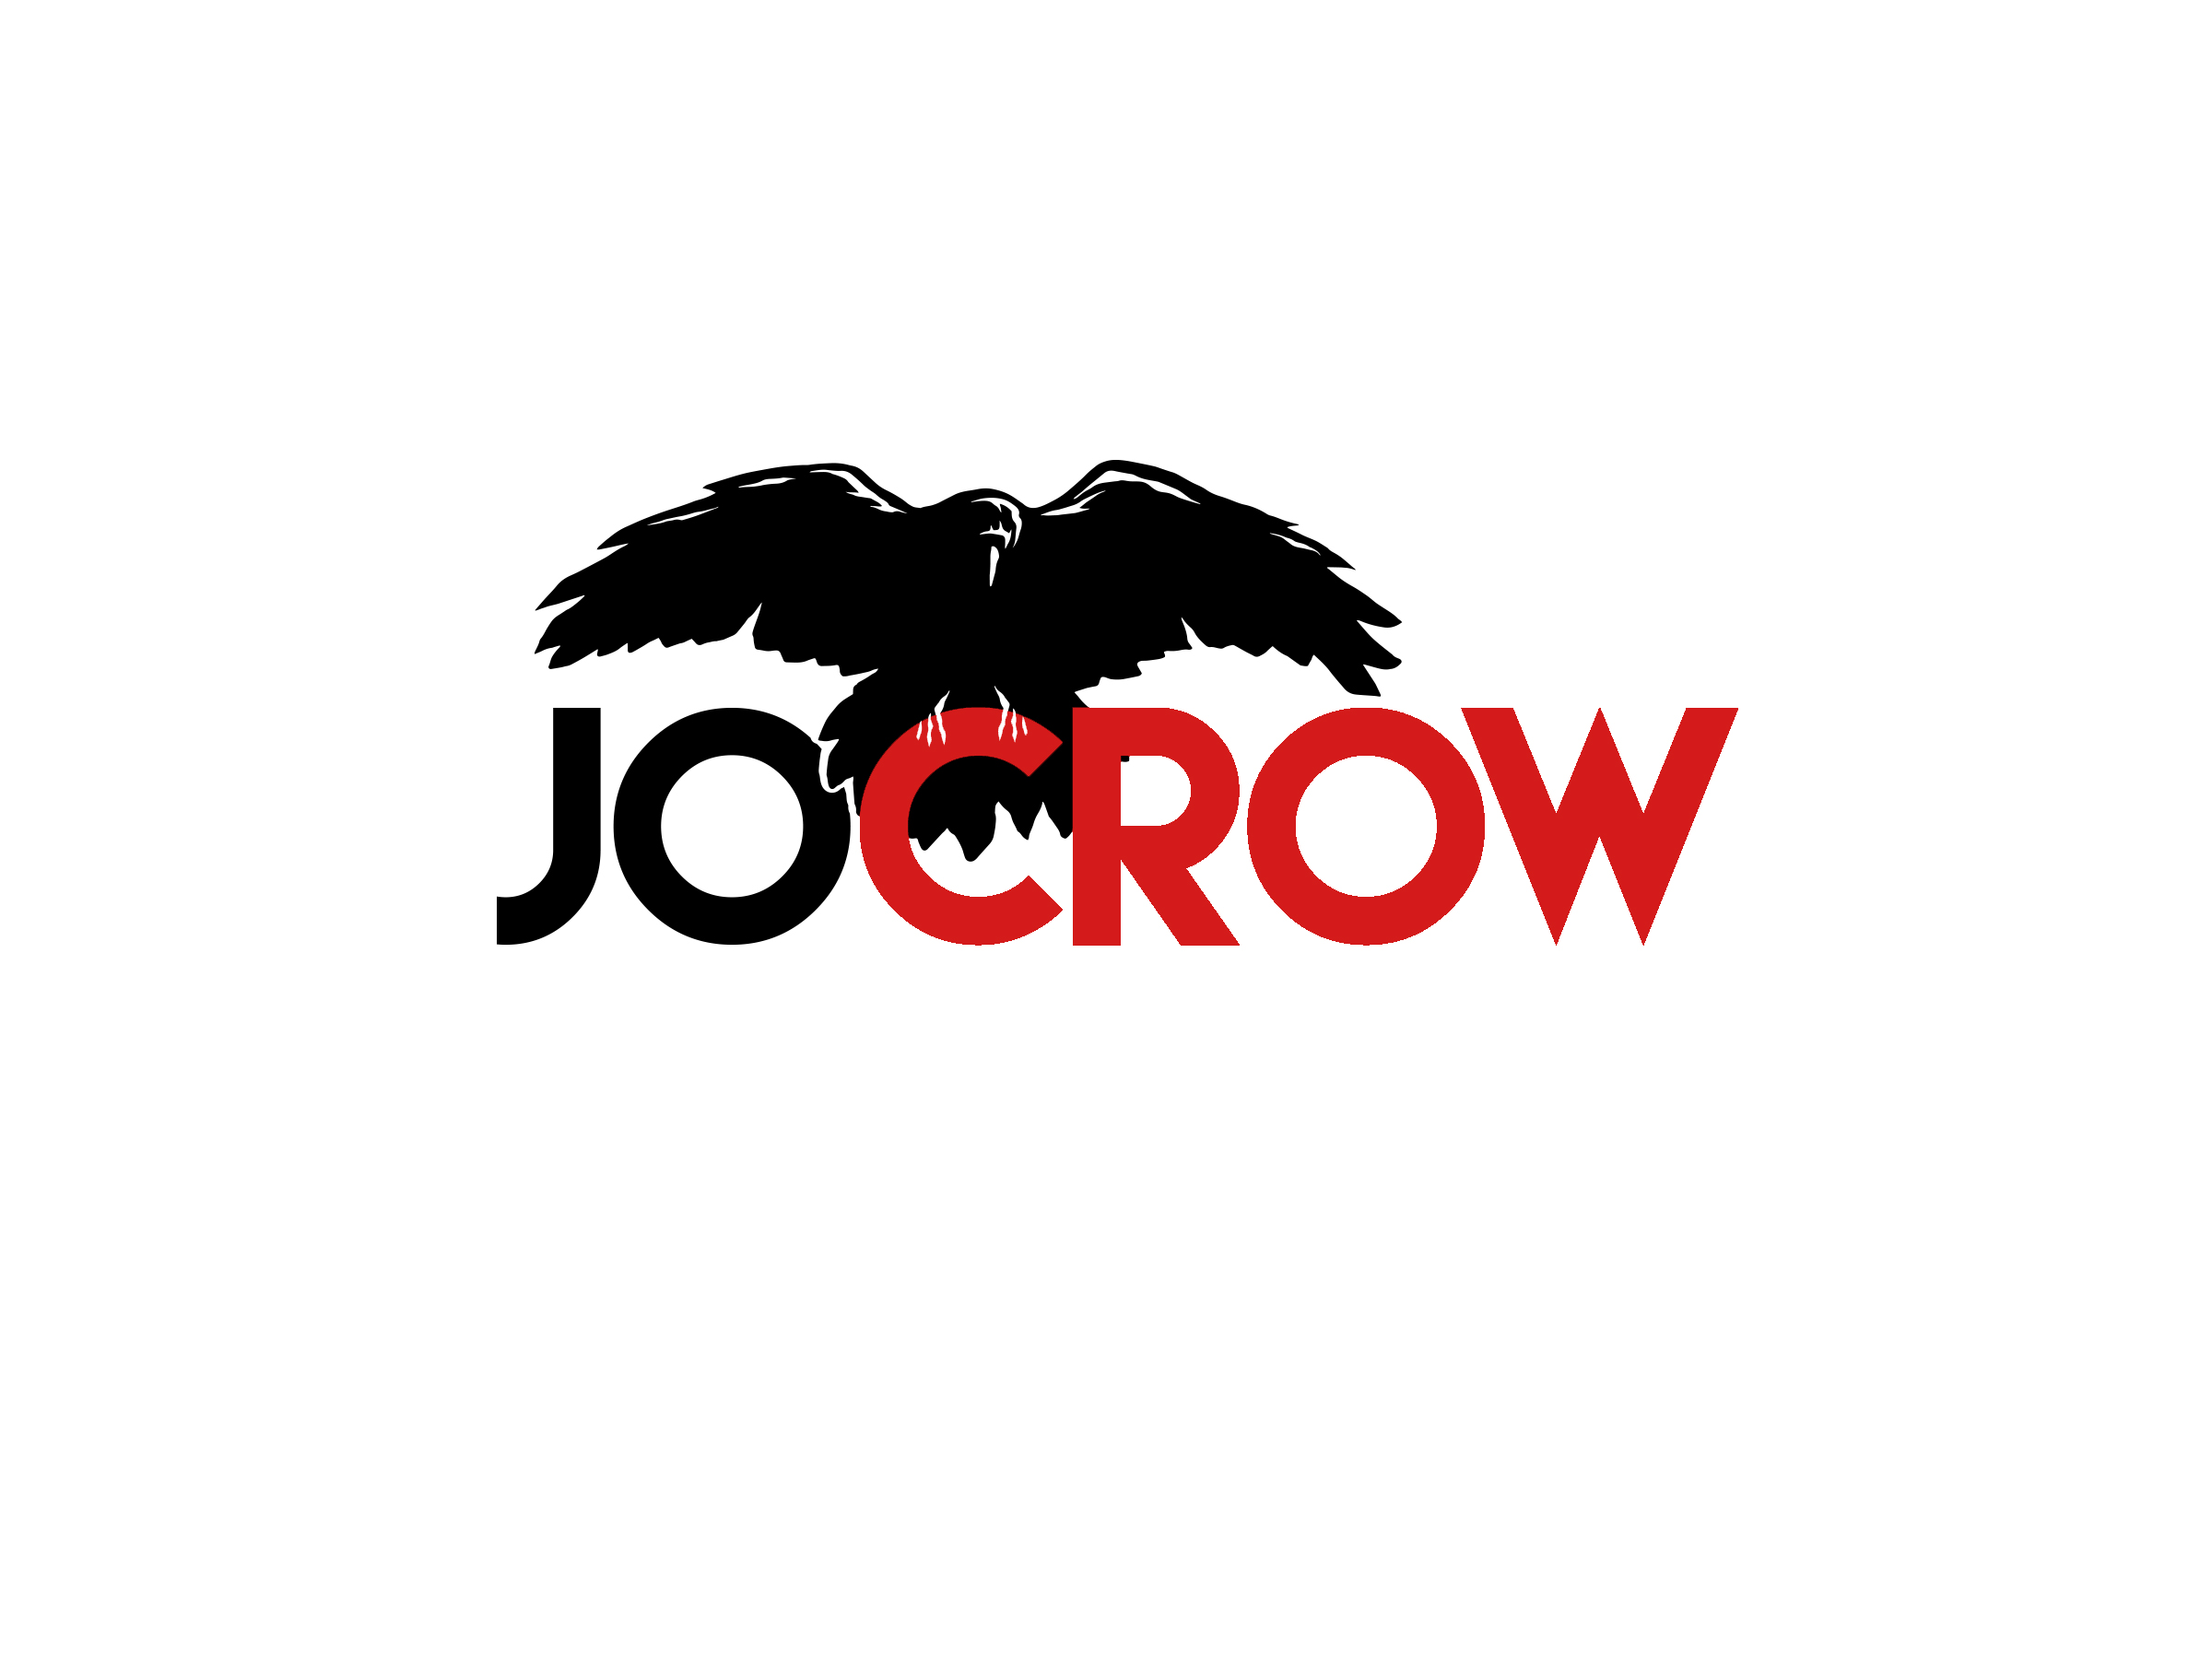 Jo Crow